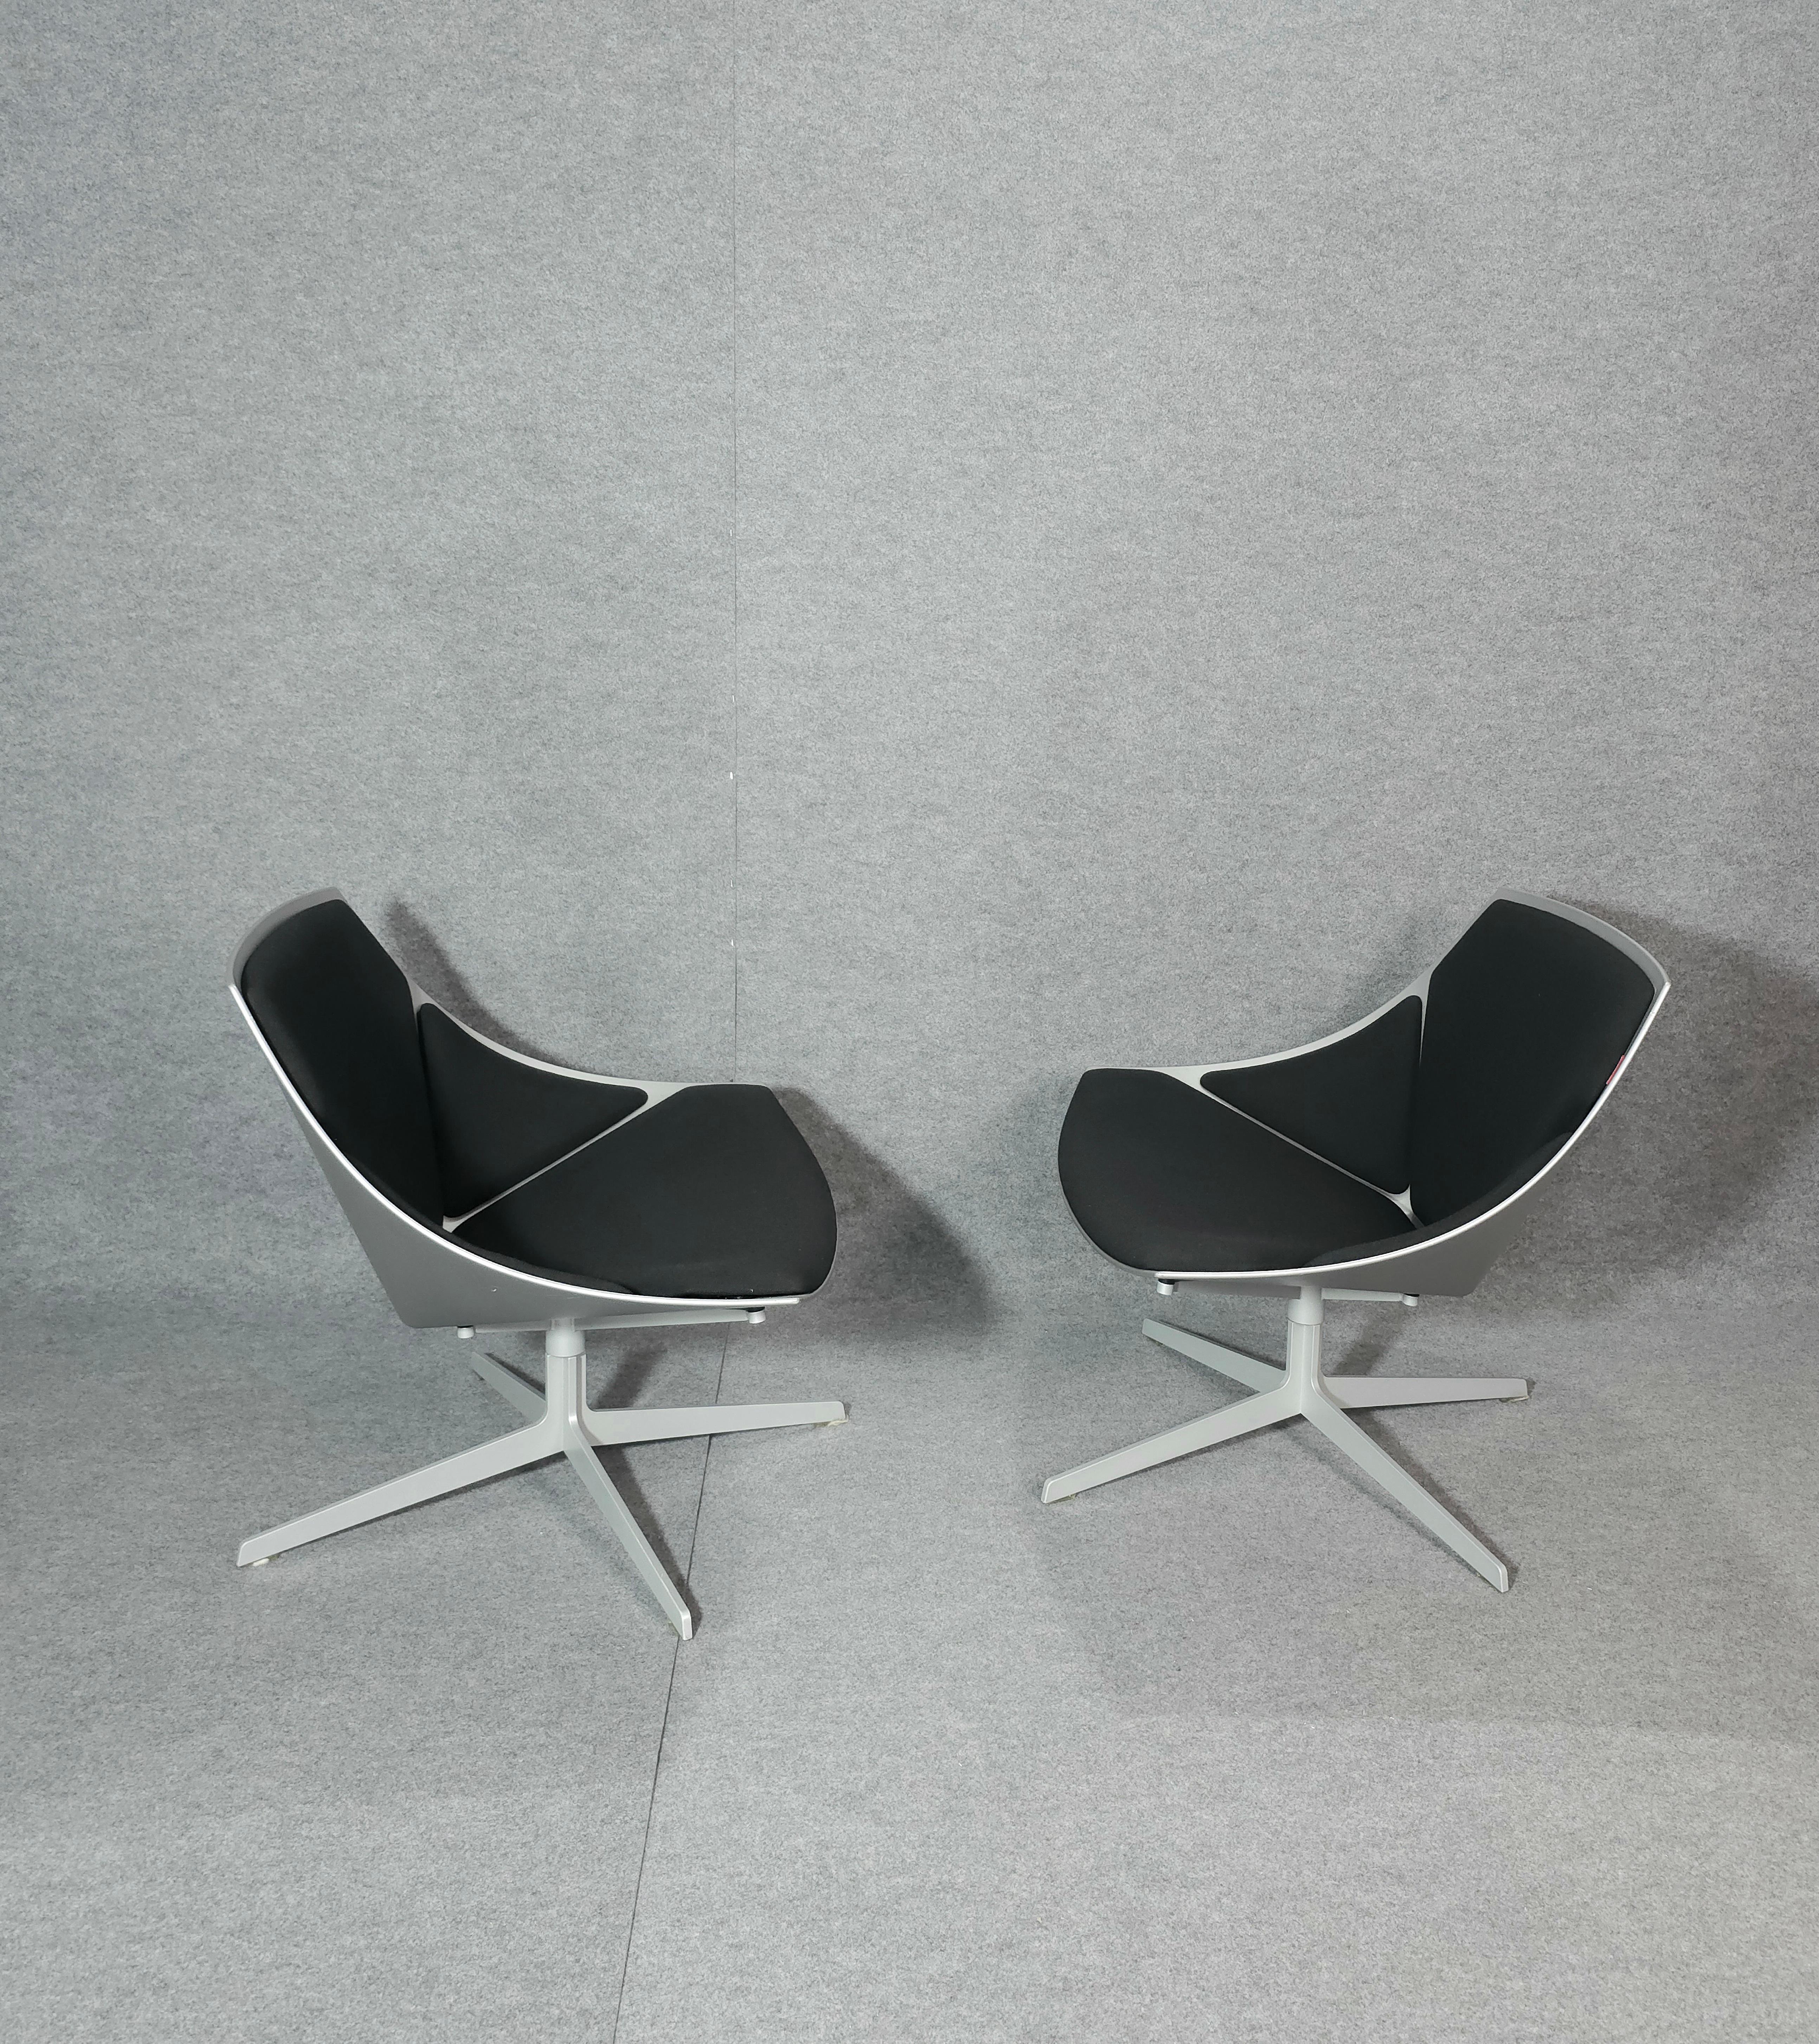 Steel Jehs & Laub for Fritz Hansen Swivel Chair Modern Pair Denmark Design 2007 For Sale